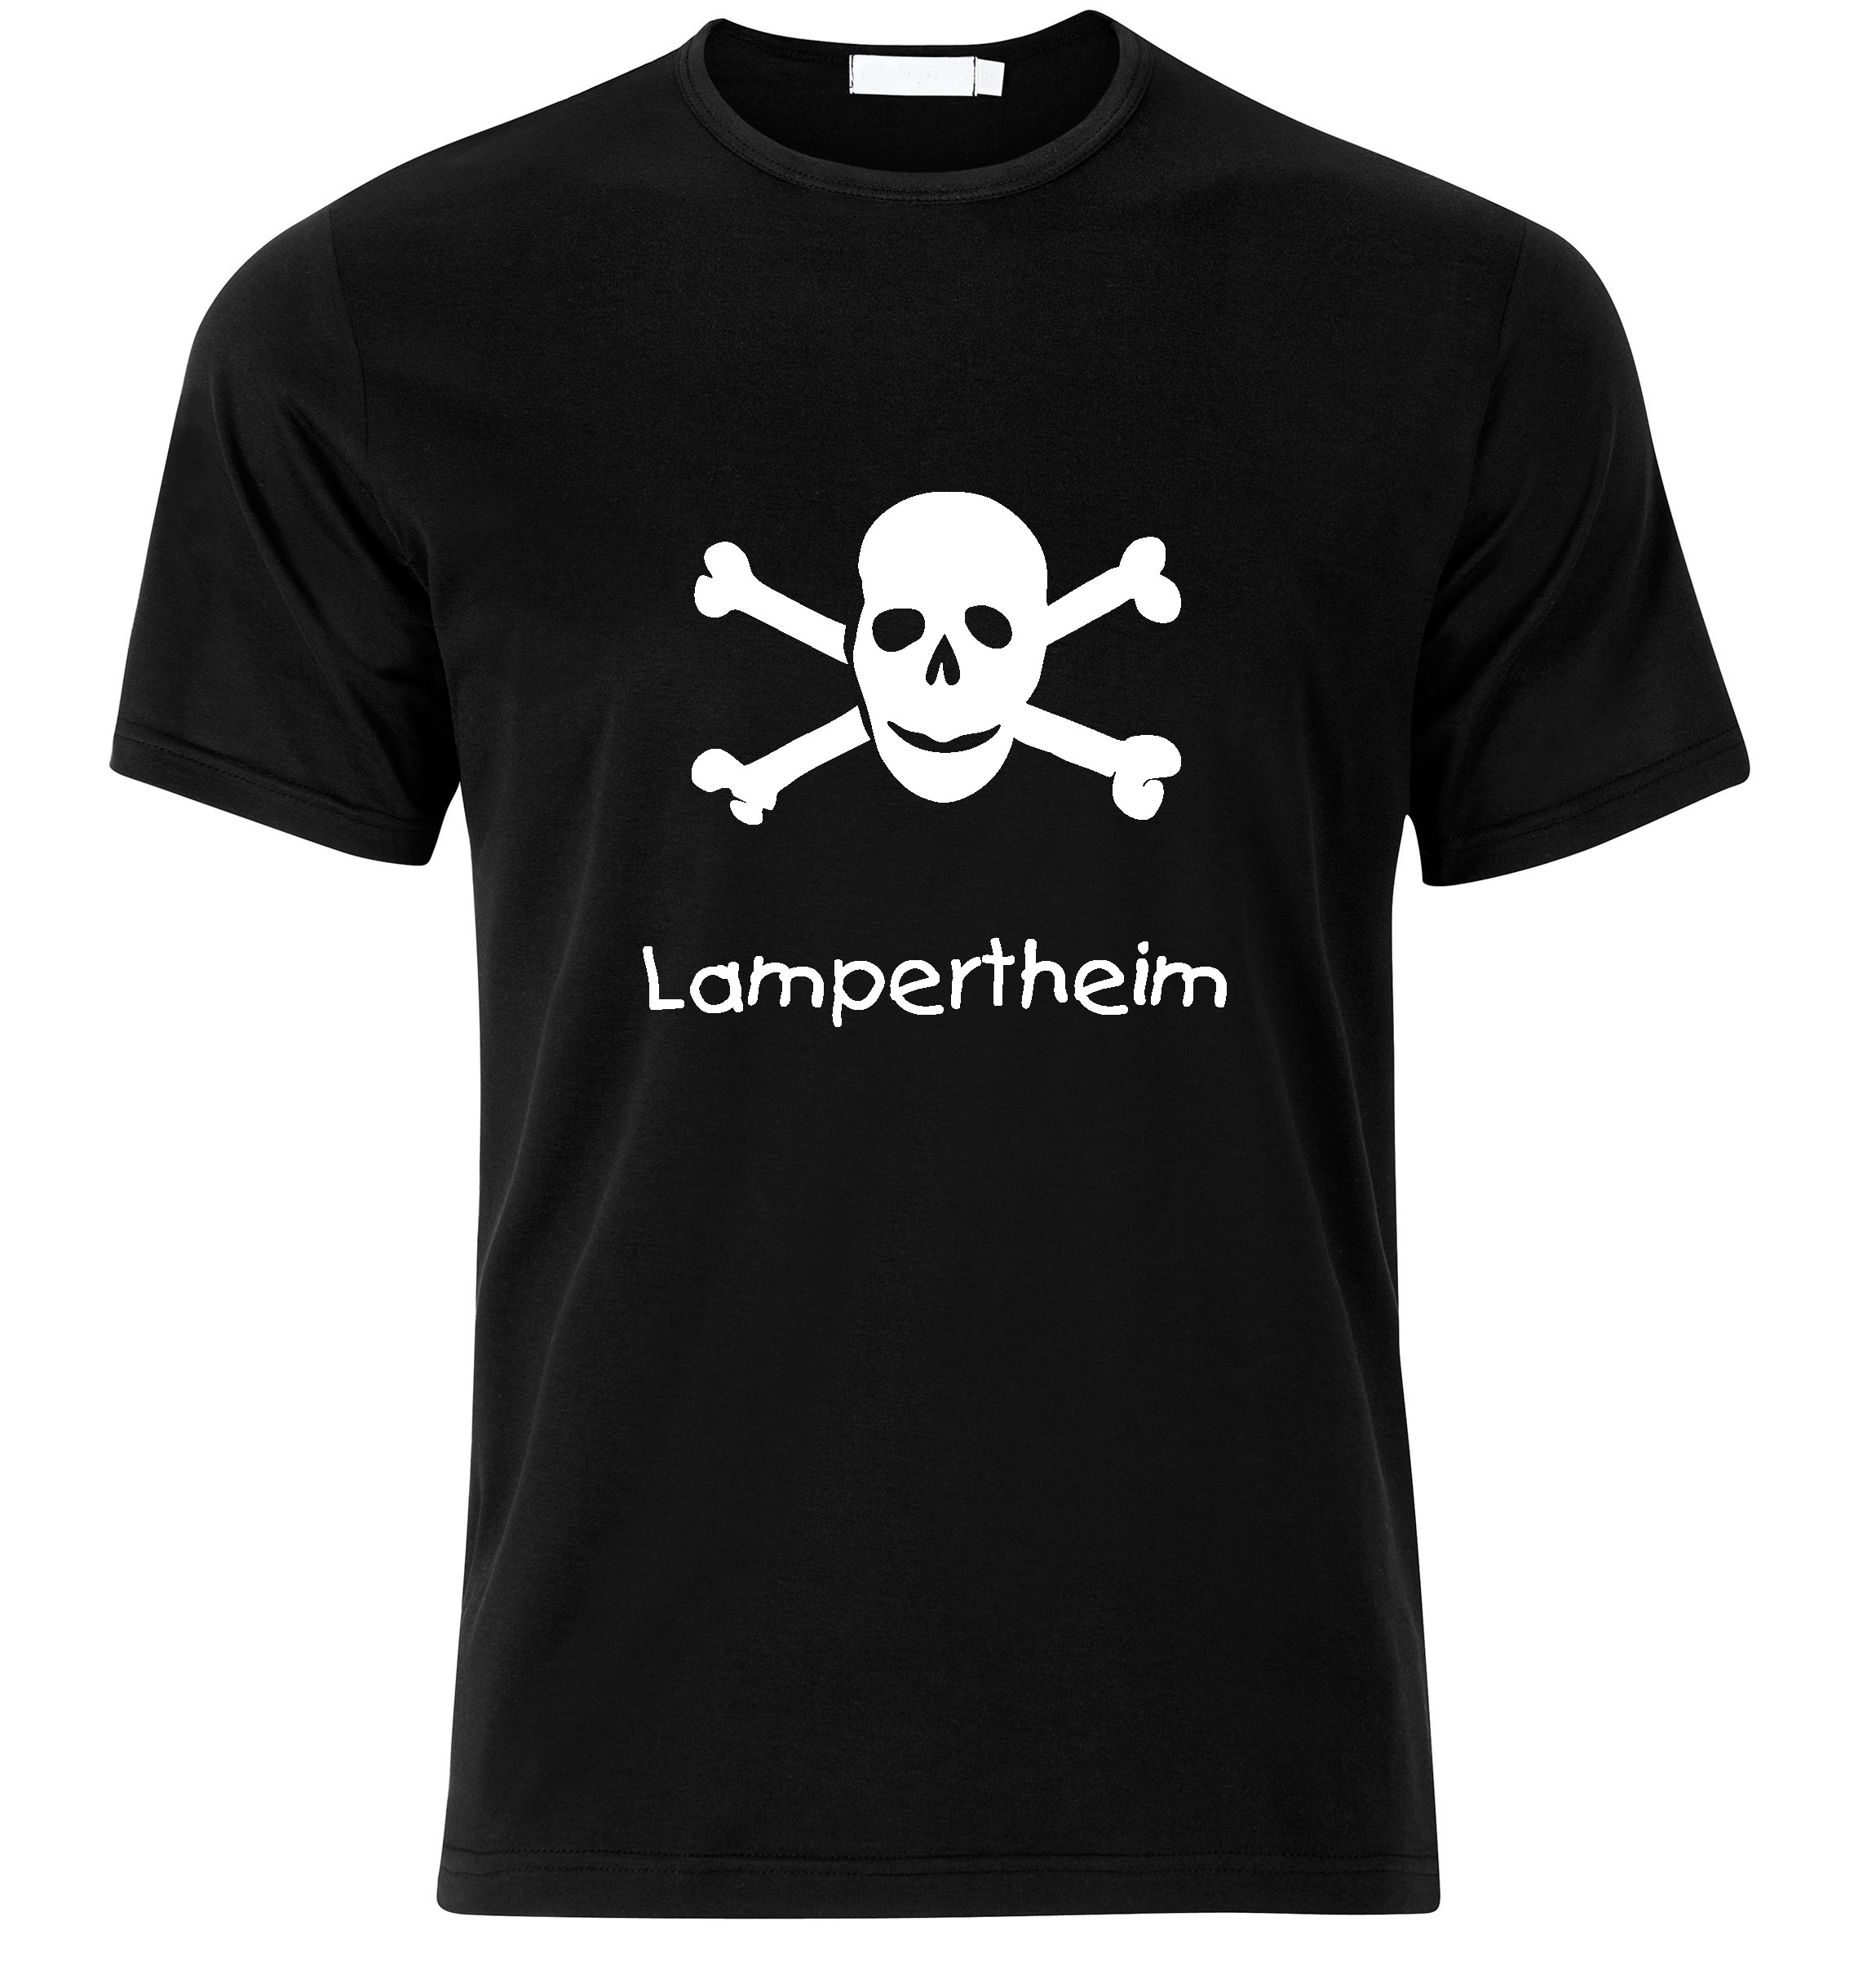 T-Shirt Lampertheim Jolly Roger, Totenkopf